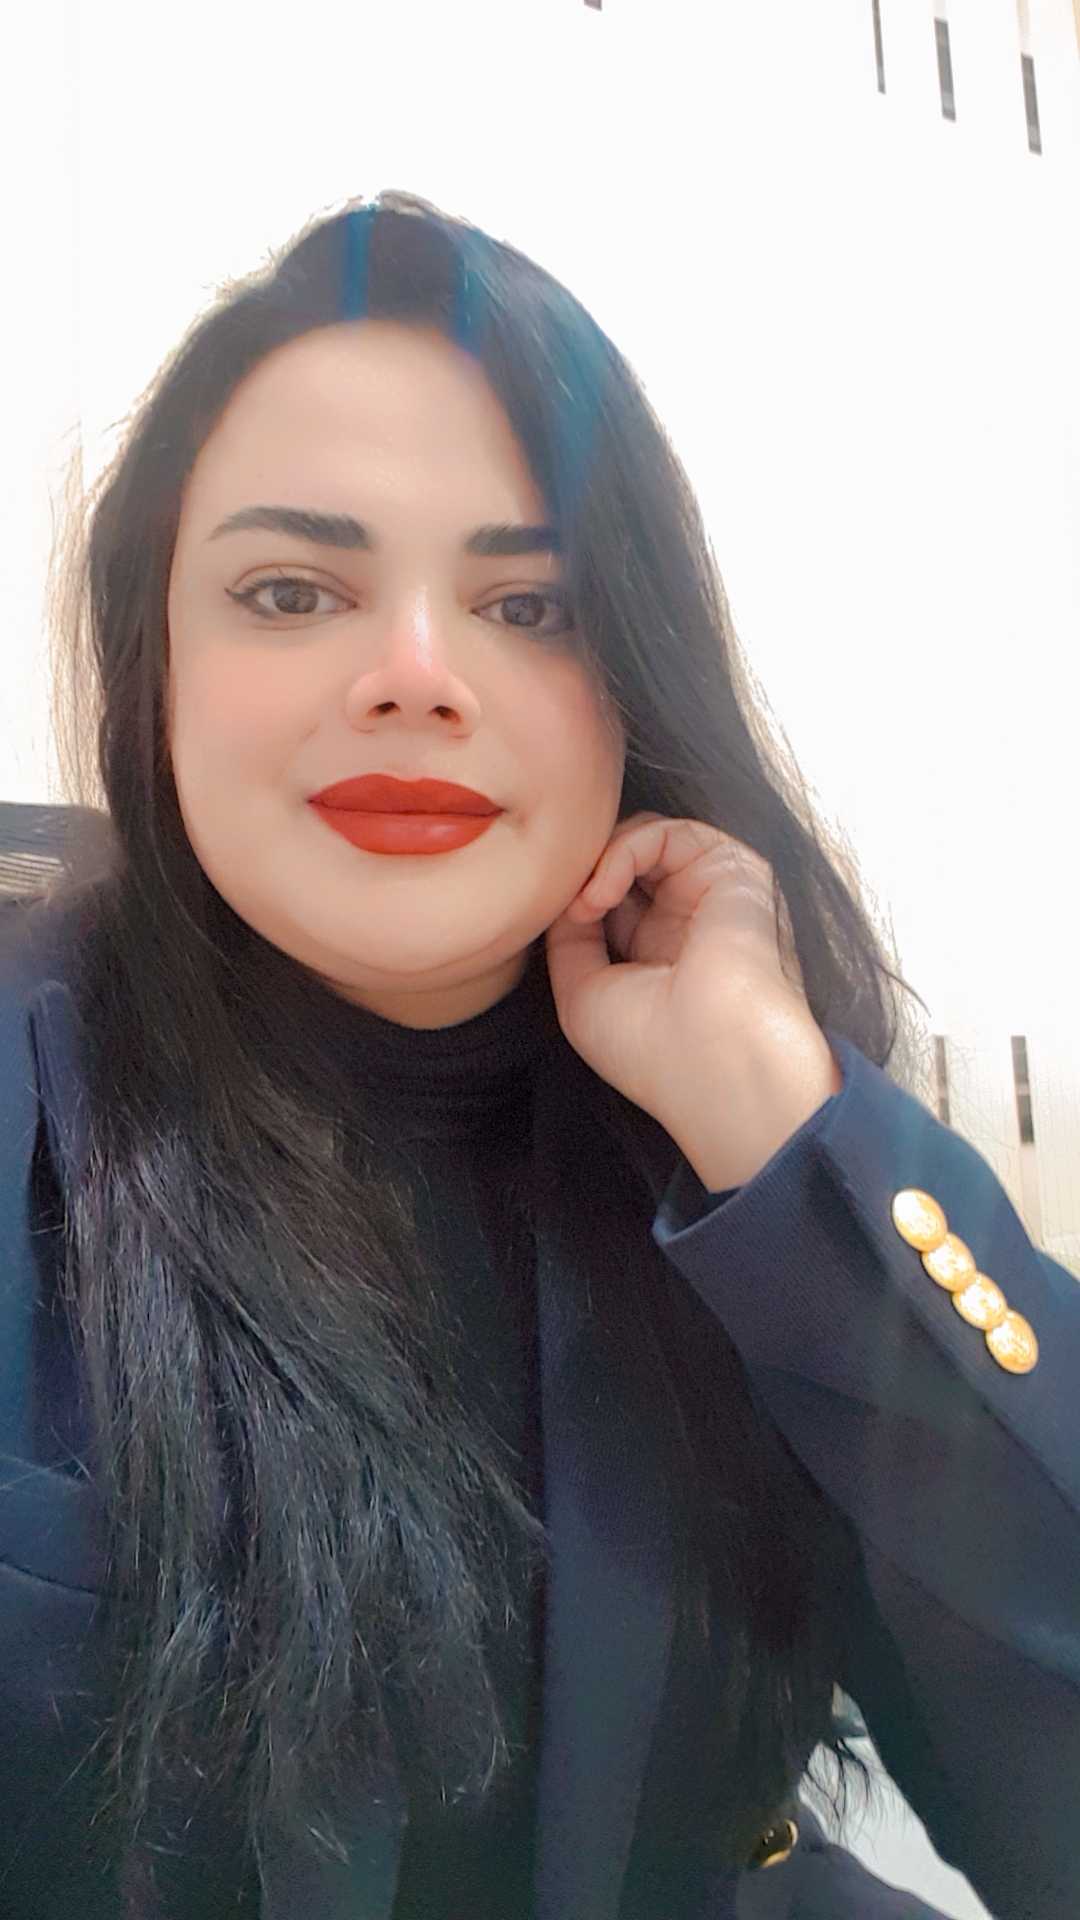 Dr. Amira Hussein